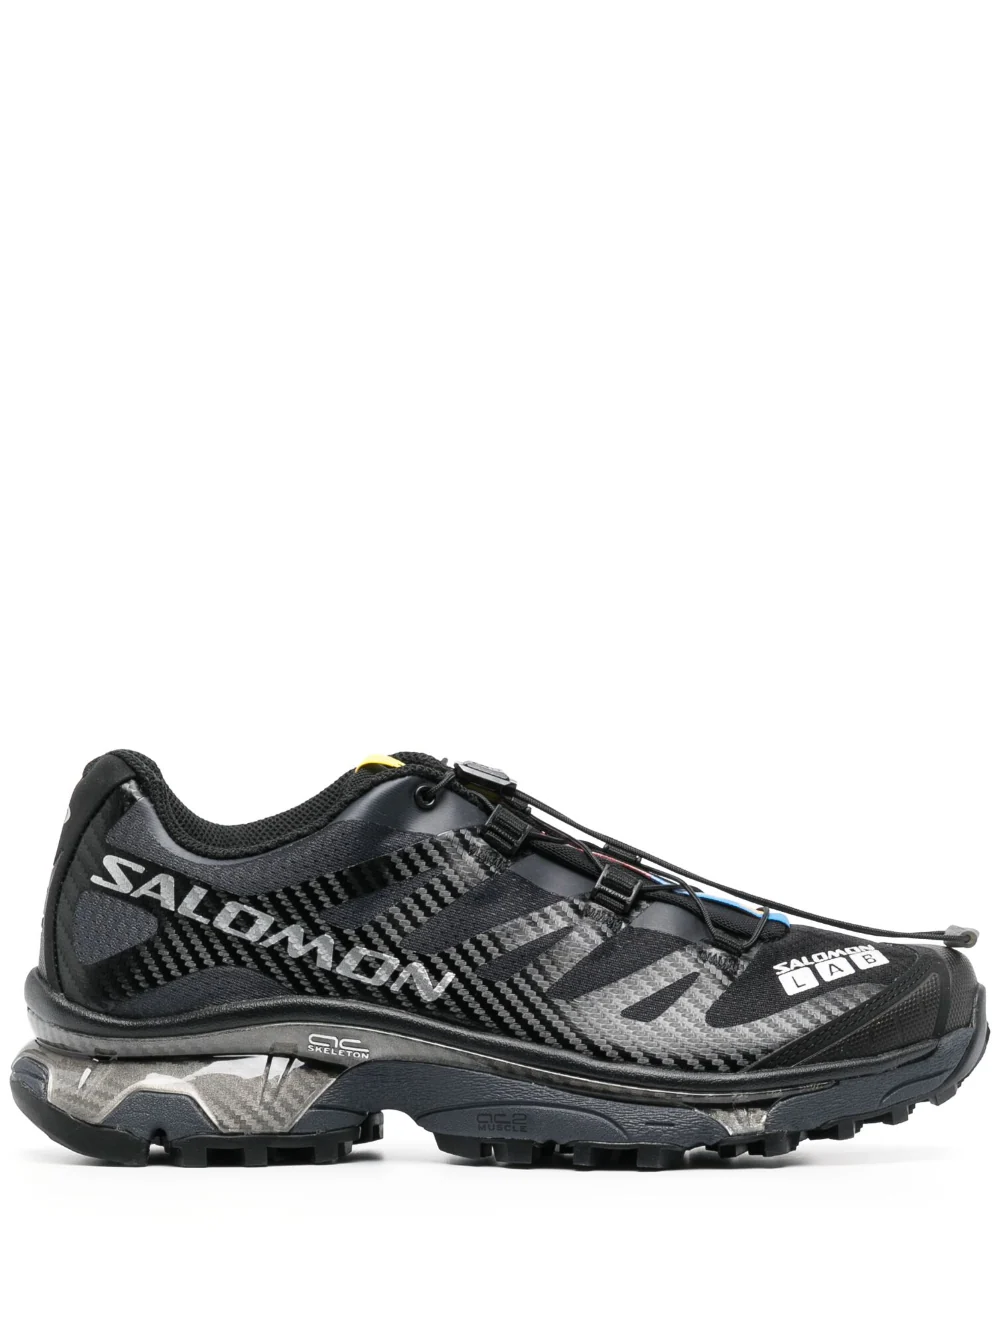 Salomon Advanced  XT4 OG 運動越野跑鞋 - 黑